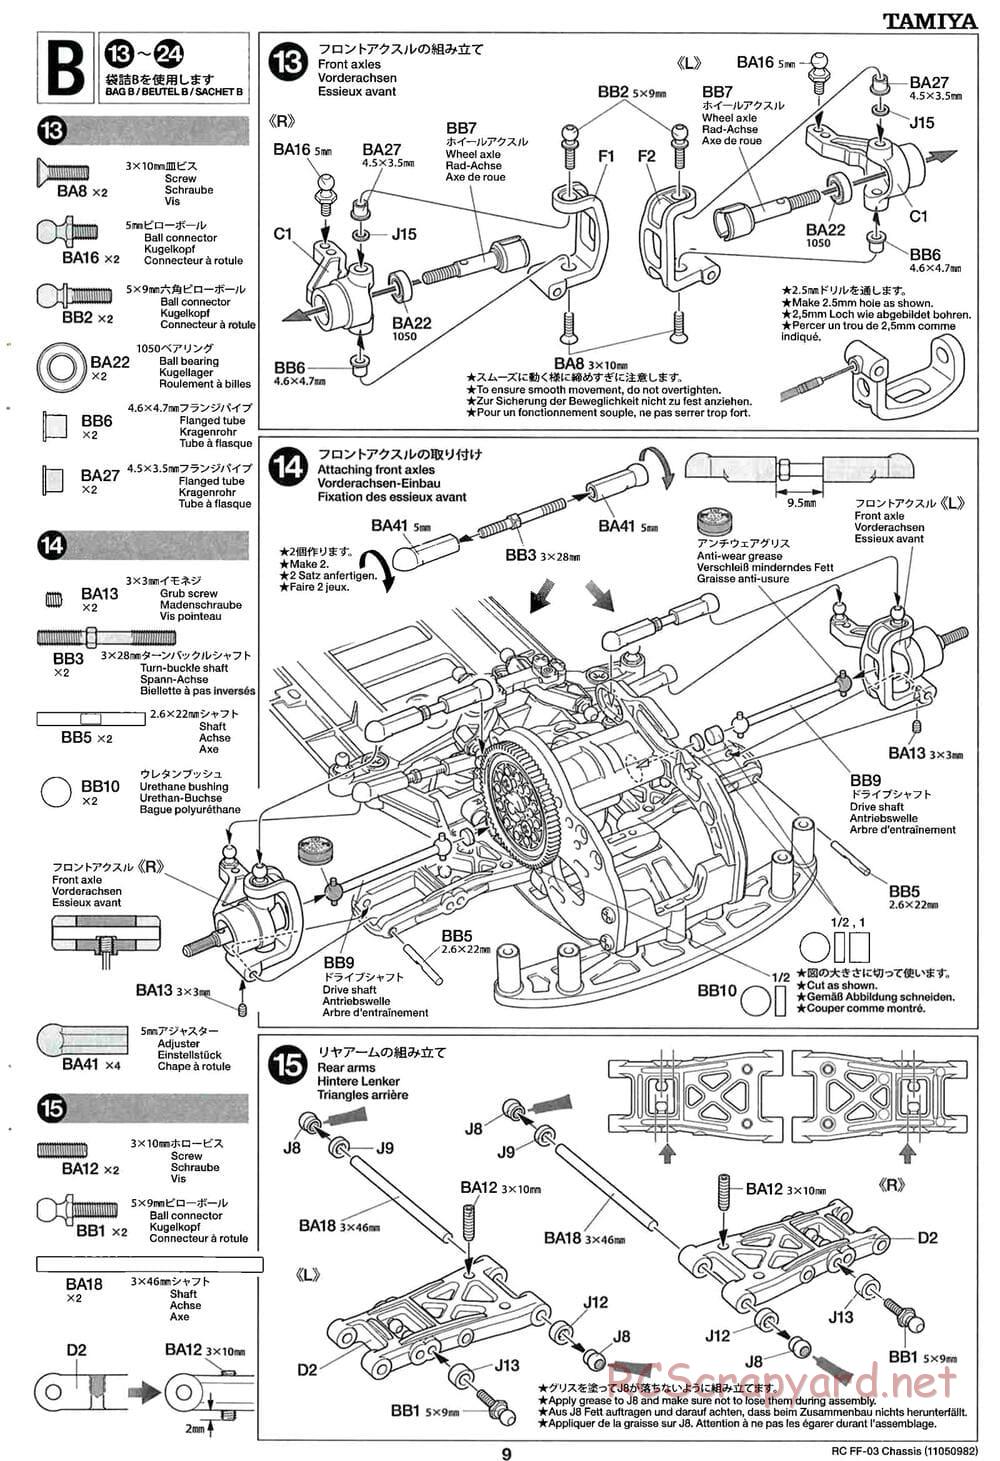 Tamiya - Castrol Honda Civic VTi - FF-03 Chassis - Manual - Page 9